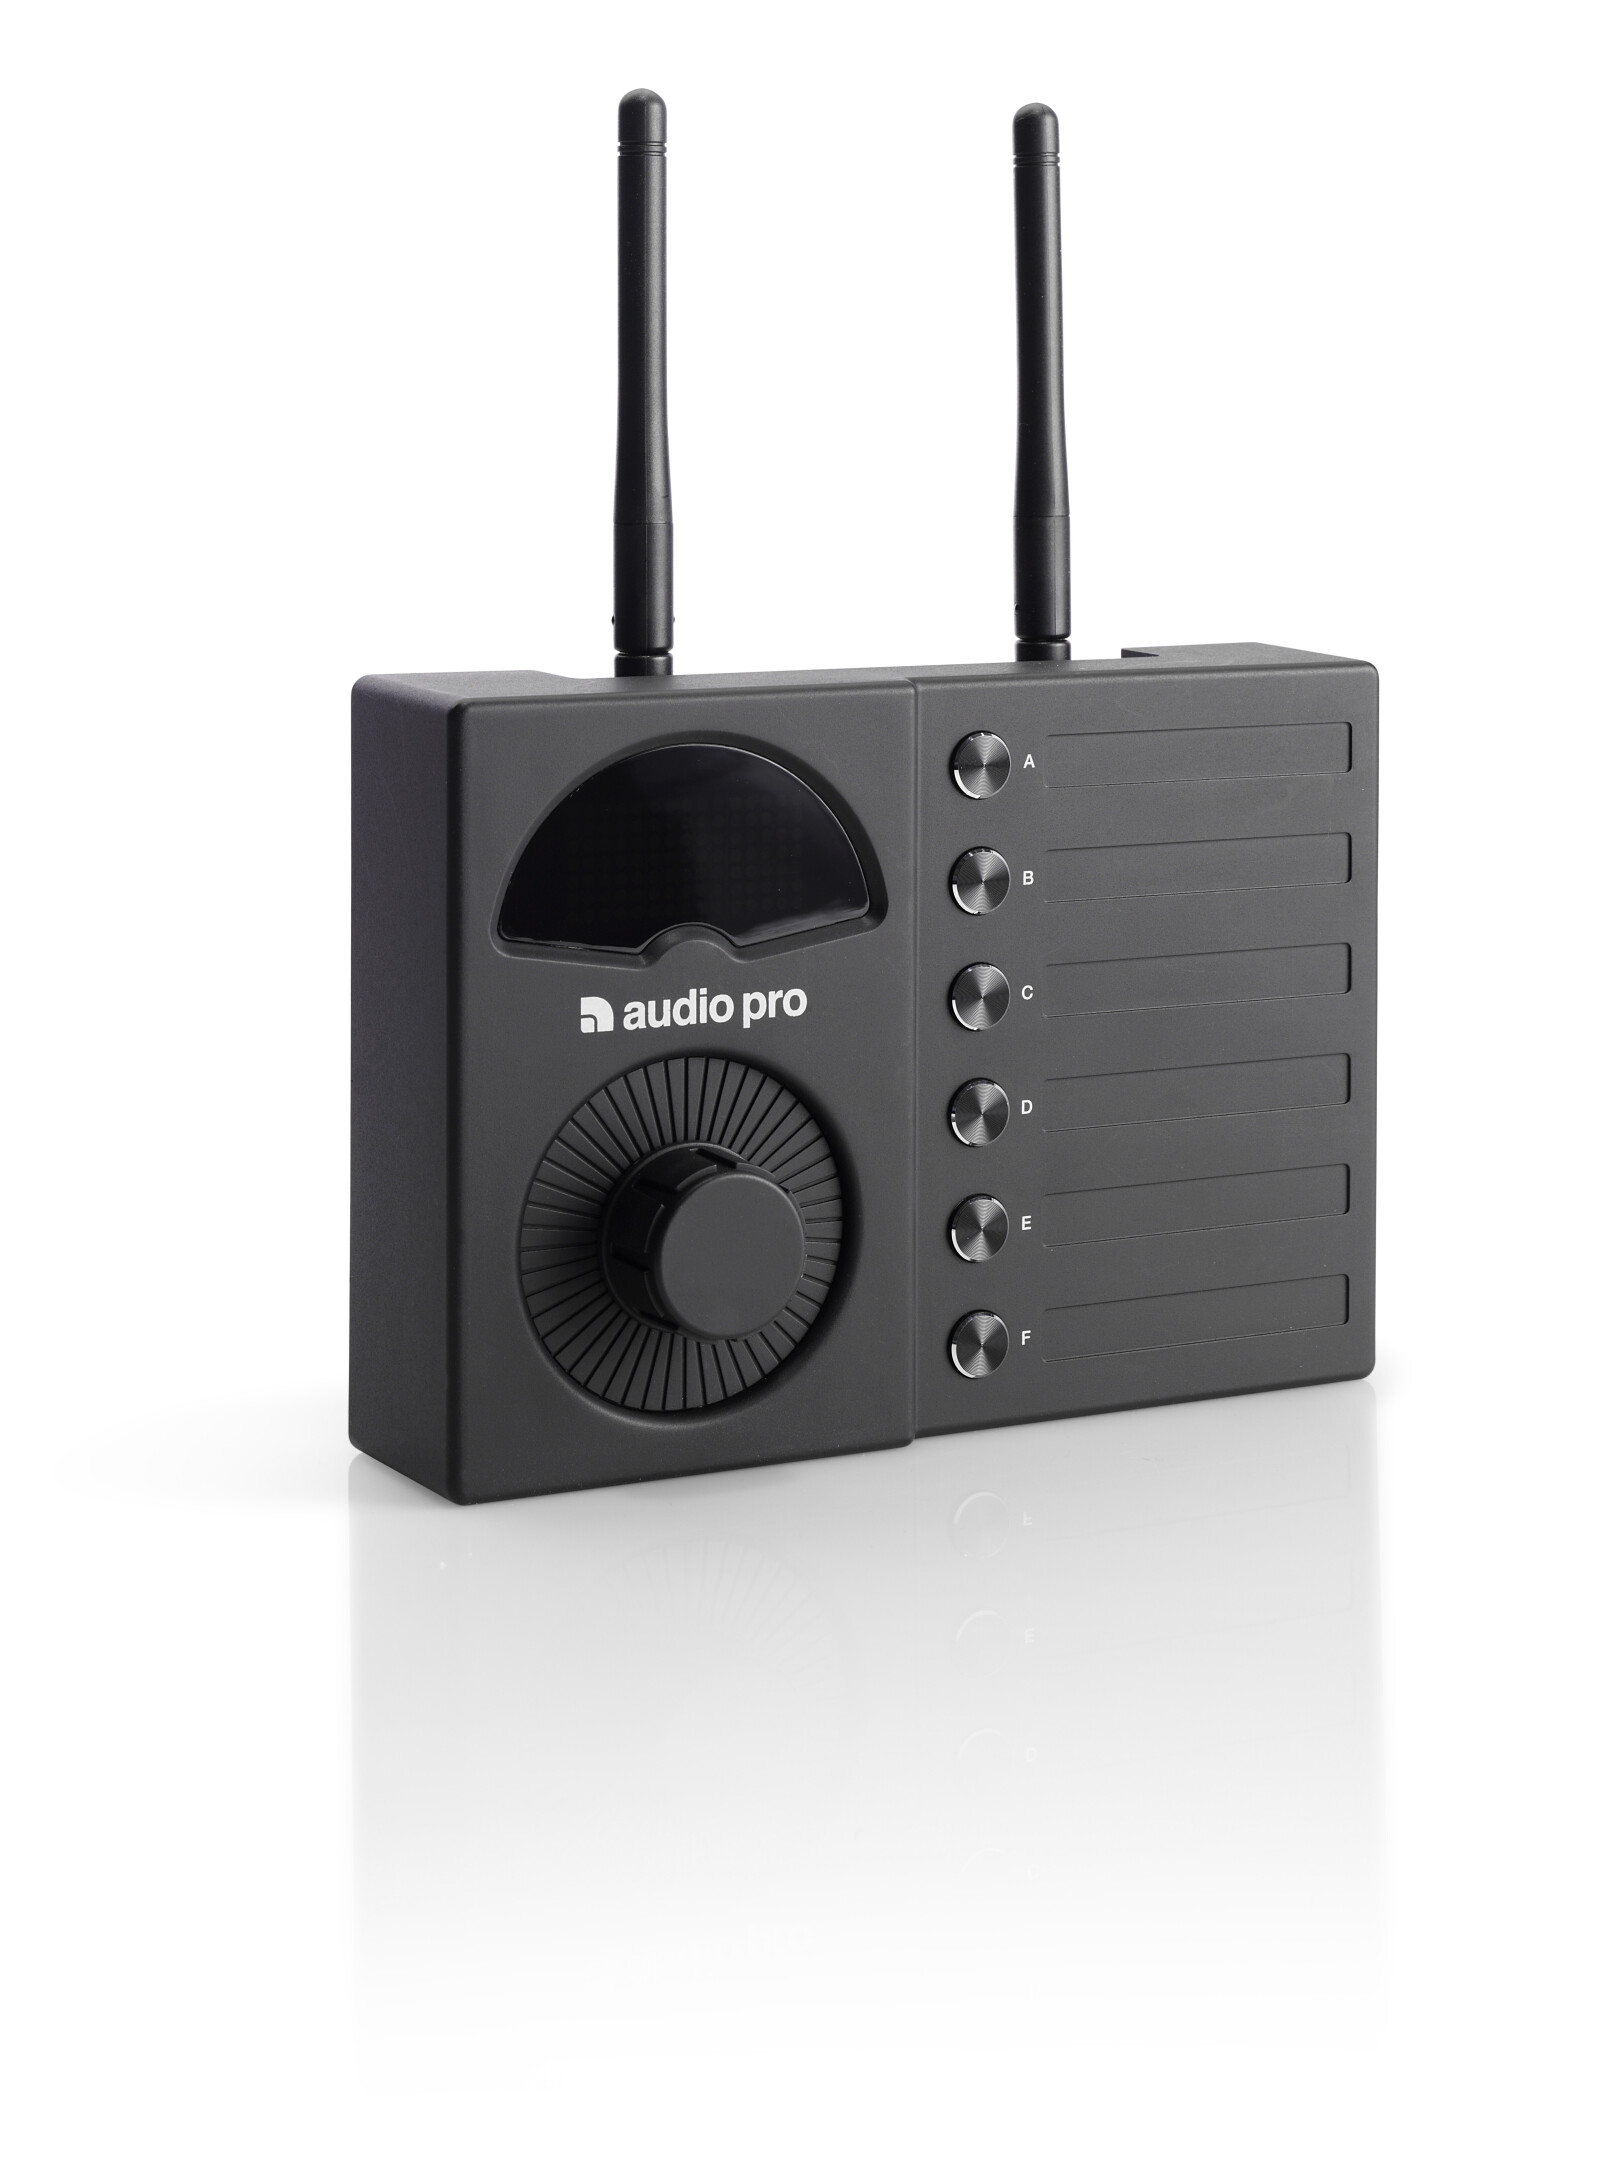 AudioPro-Business-VOL-1-Lautstarkeregler-fur-kabellose-Lautsprecher-DECT-fur-6-Lautstarke-Zonen-schwarz